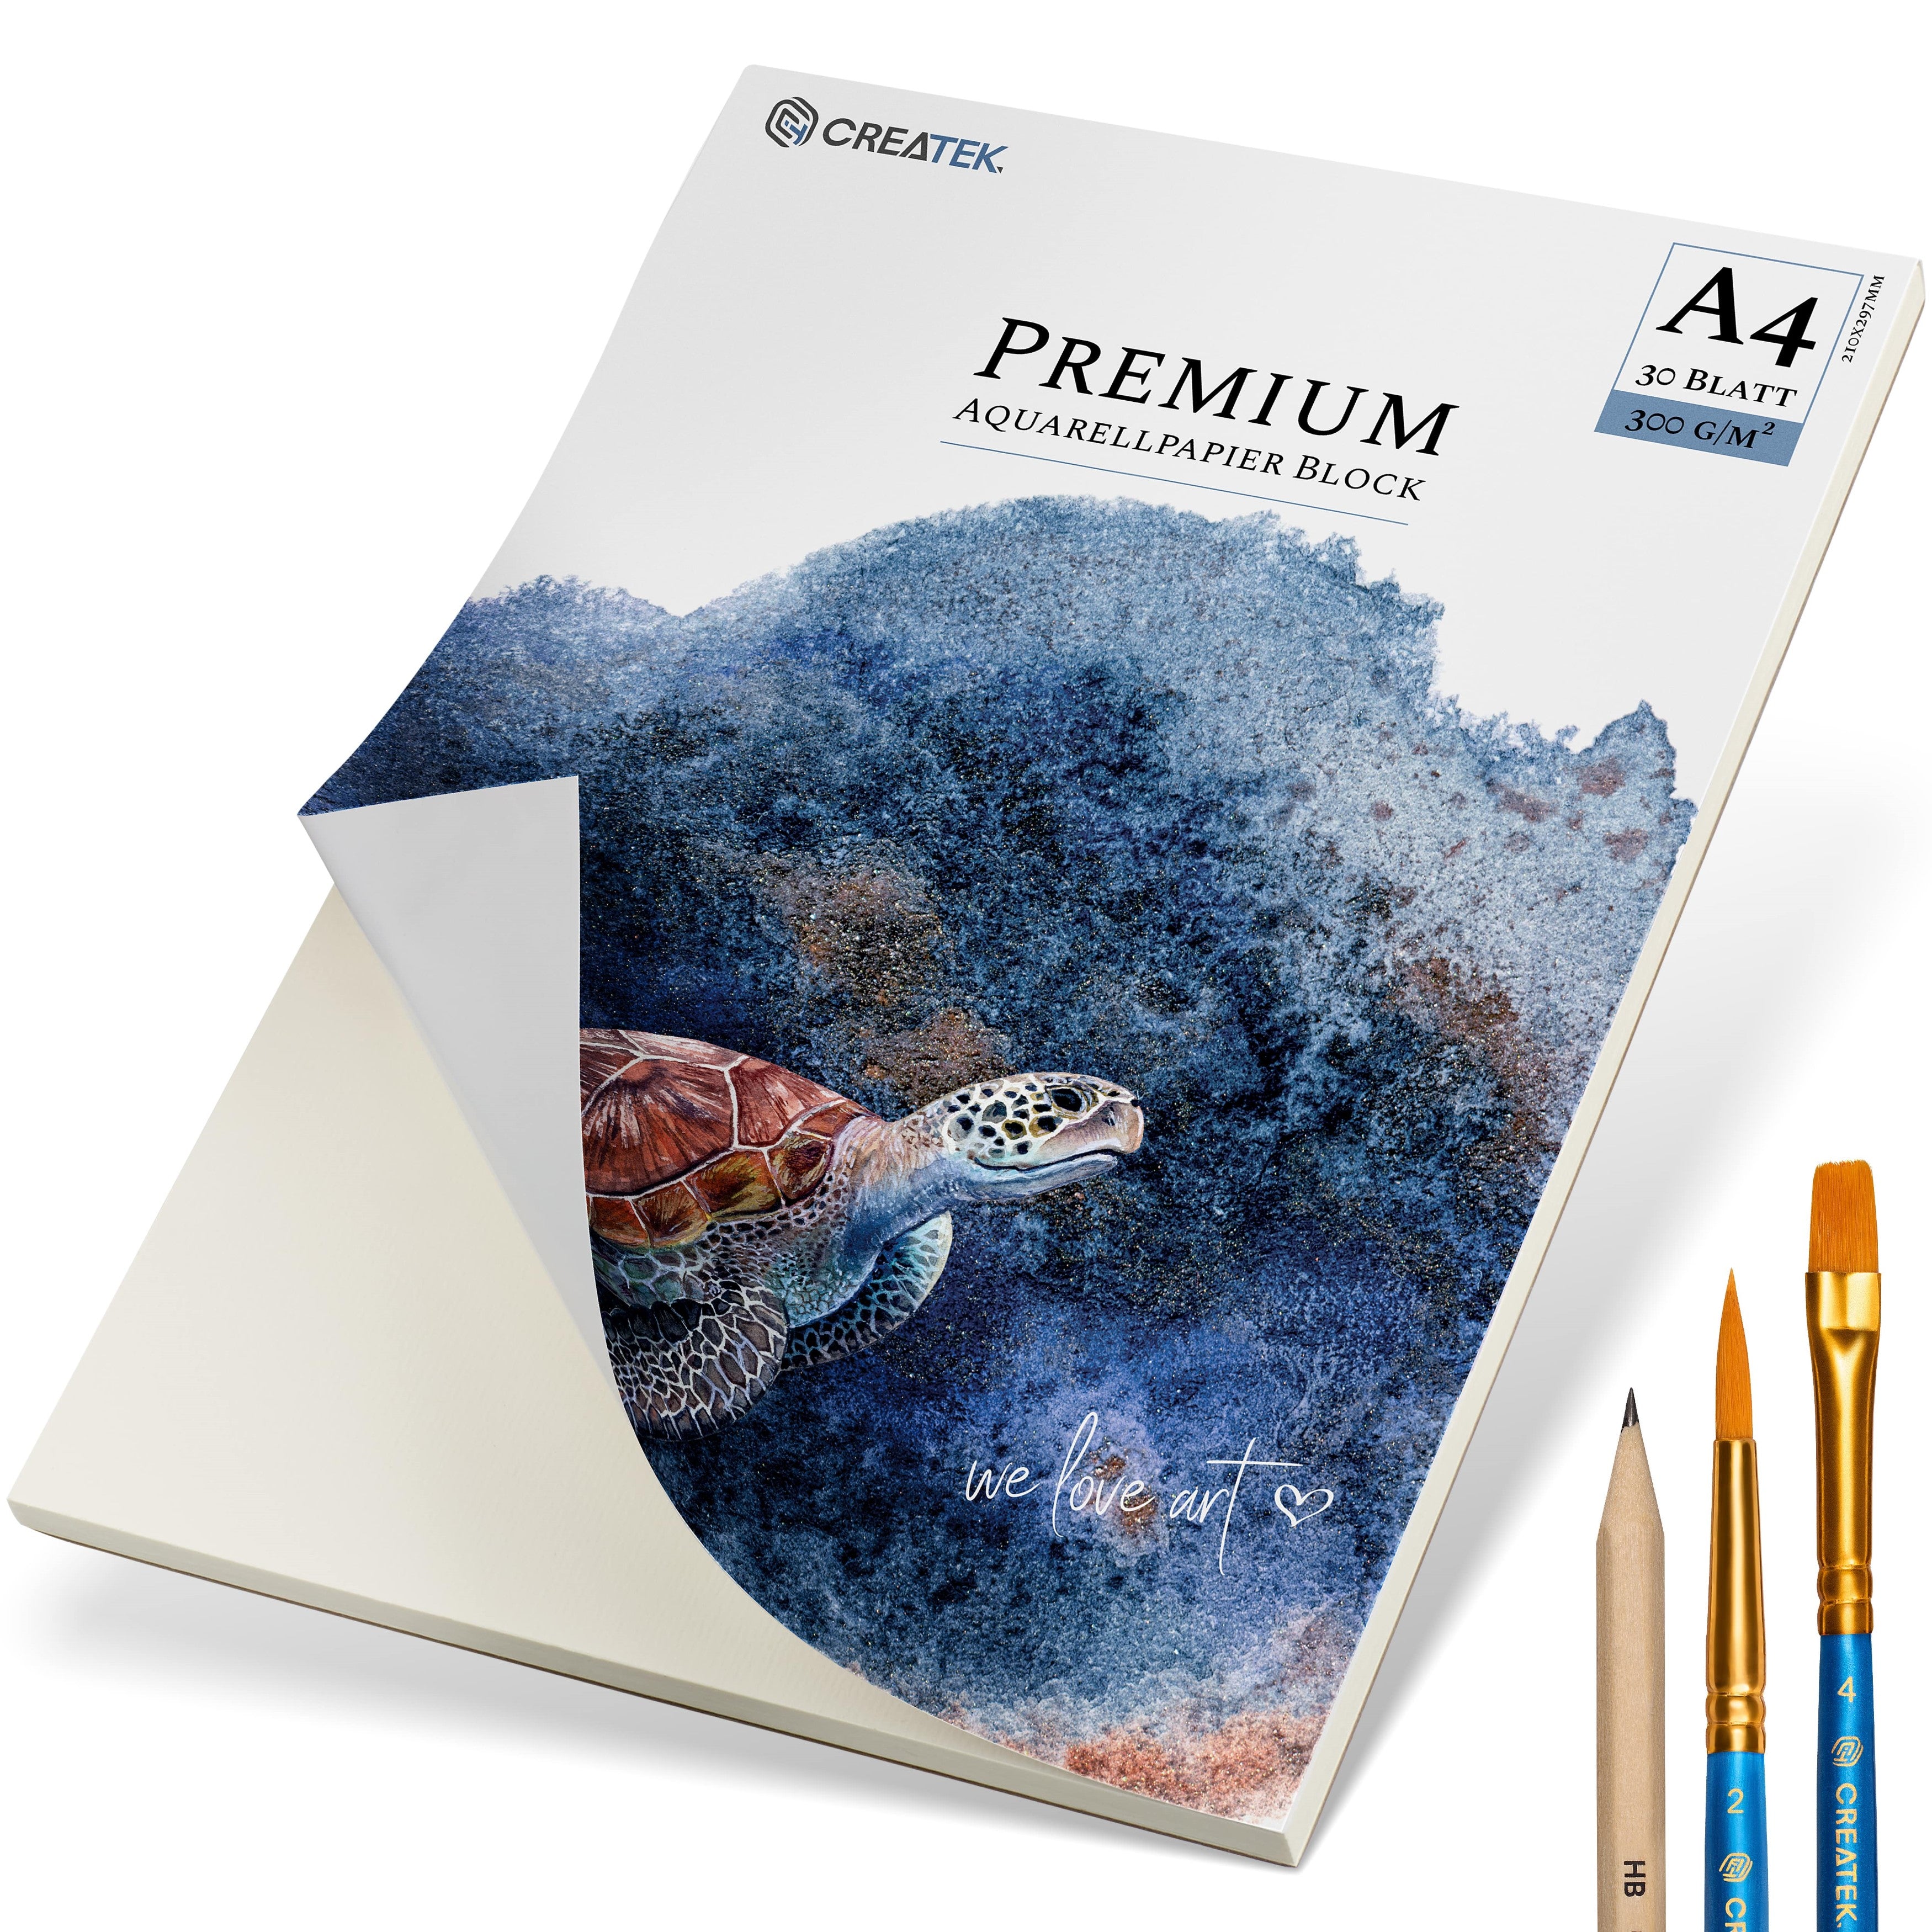 Aquarellpapier A4 | 300g | 30 Blatt | kopfseitig geleimt | kaltgepresst & naturweiß für exzellent Farbwiedergabe